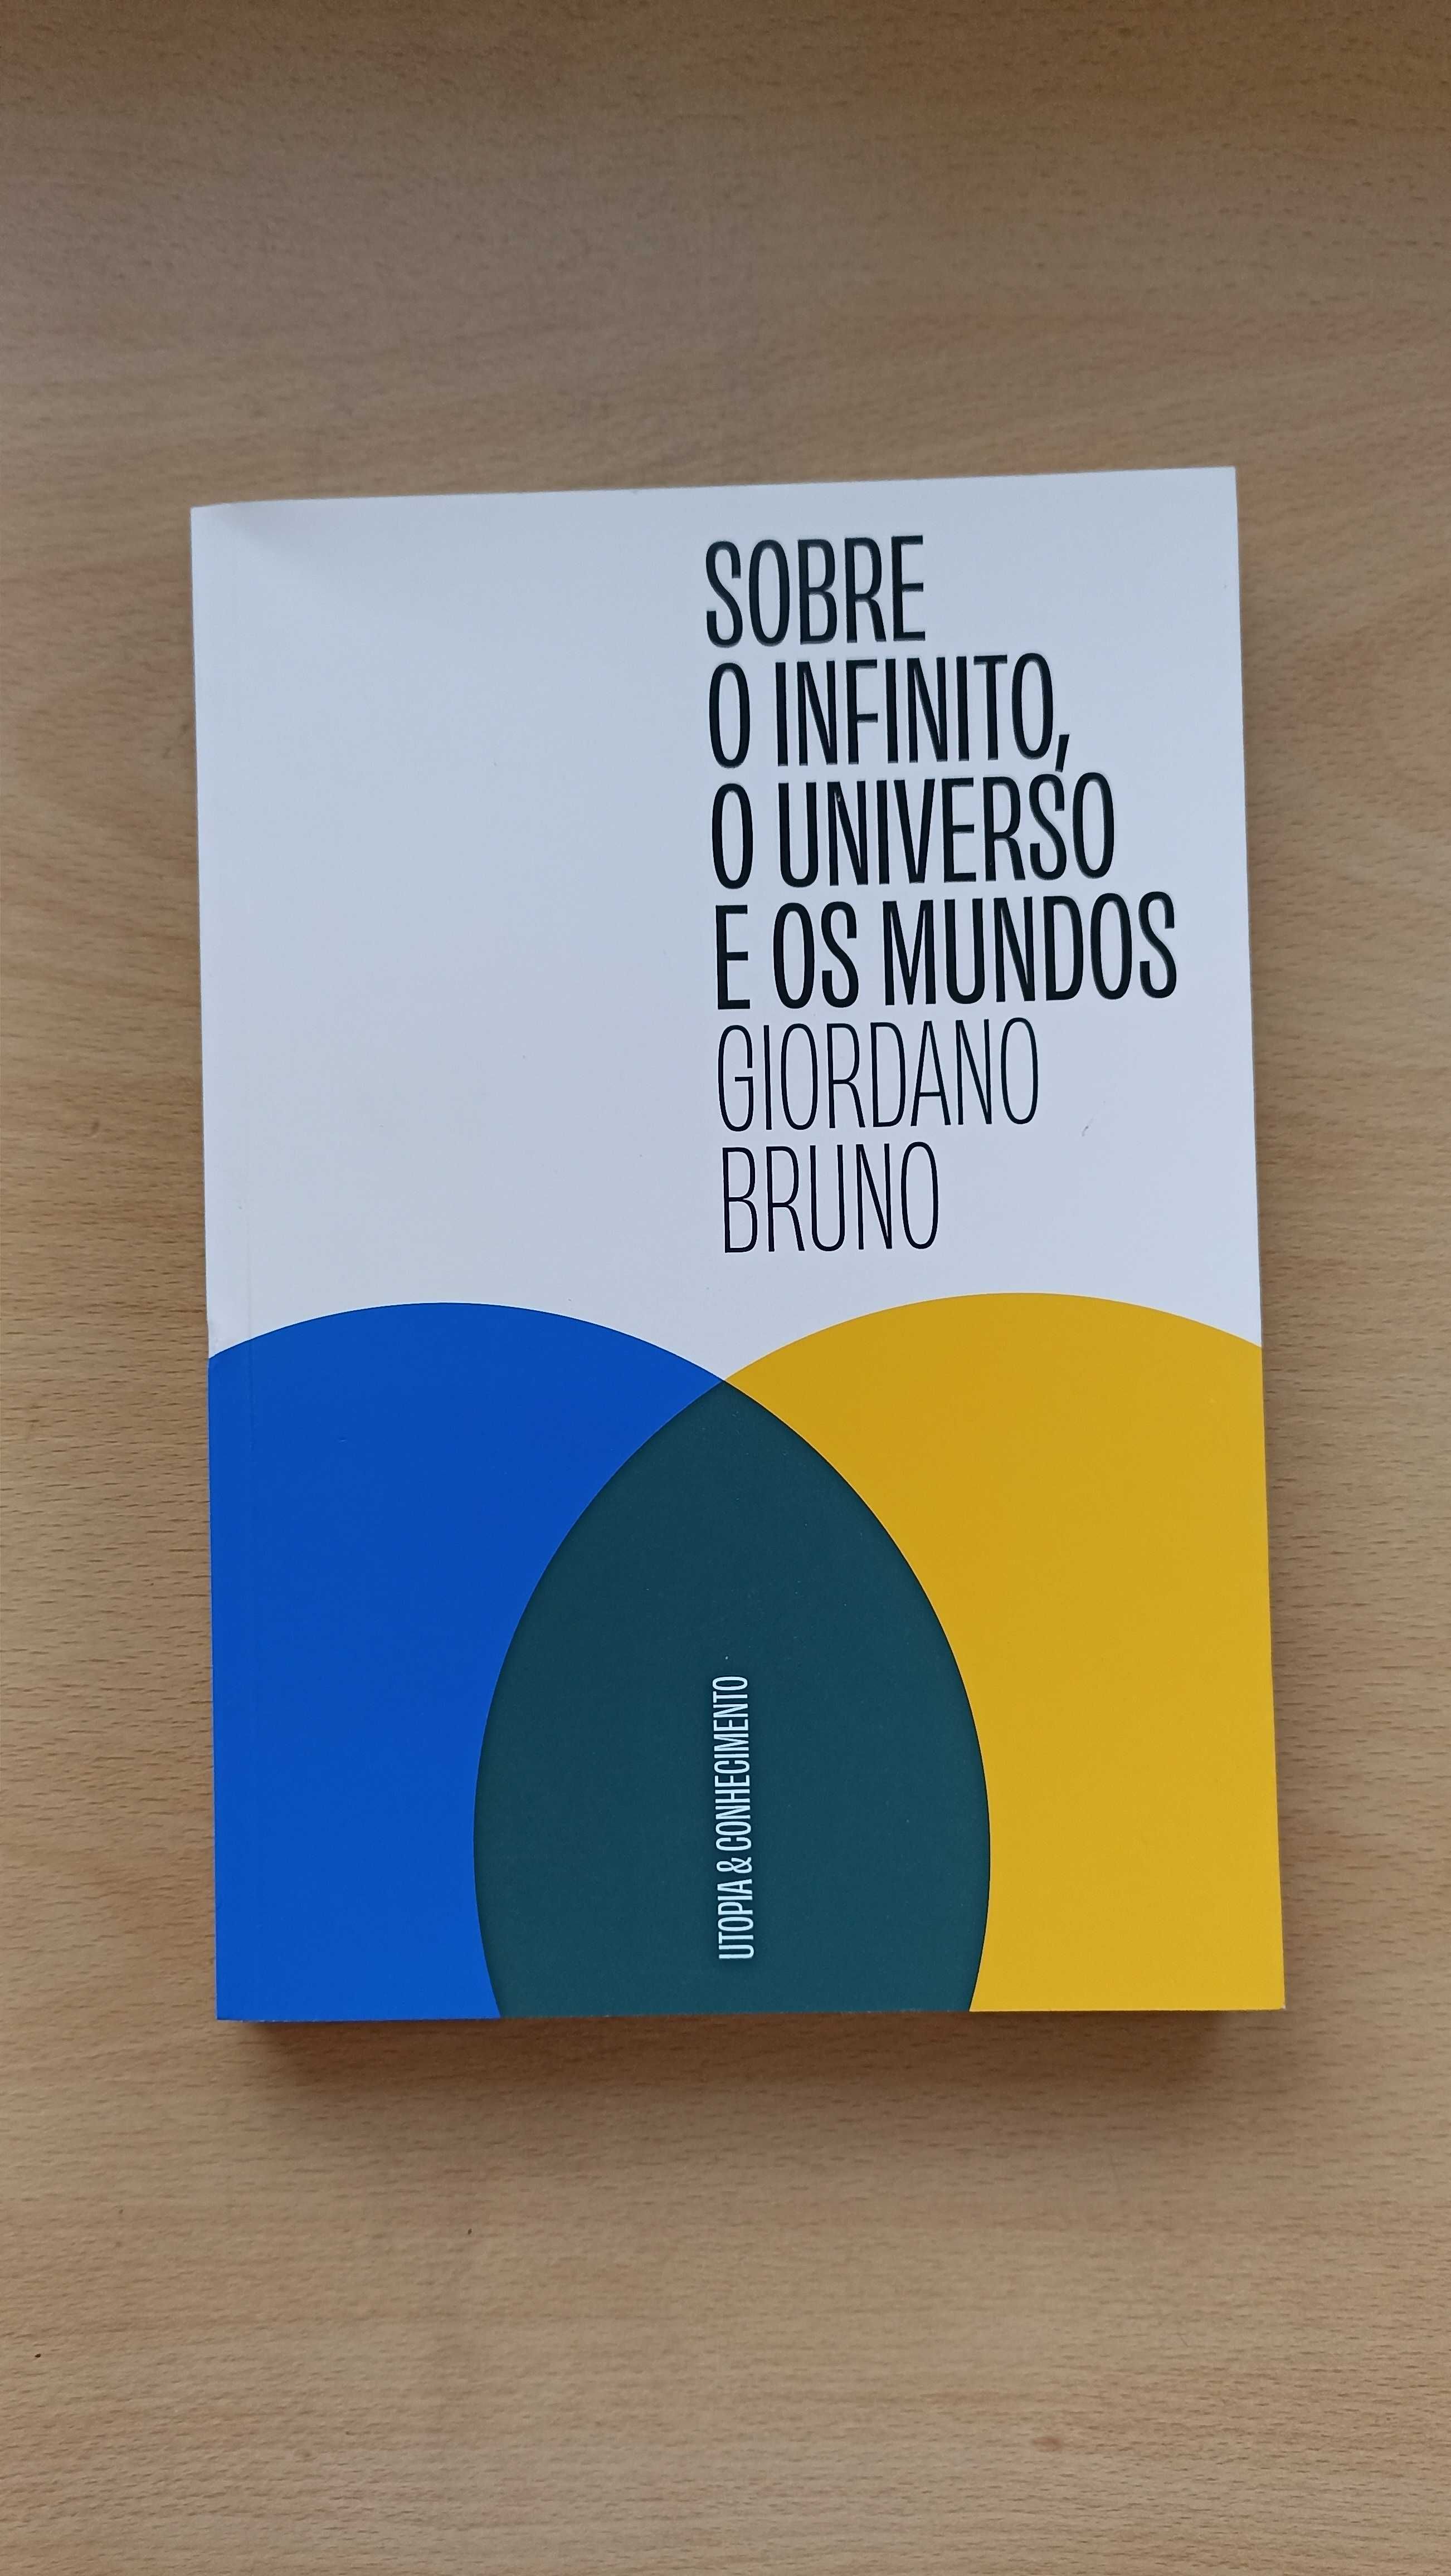 Livro "Sobre O Infinito, O Universo e Os Mundos" de Giordano Bruno